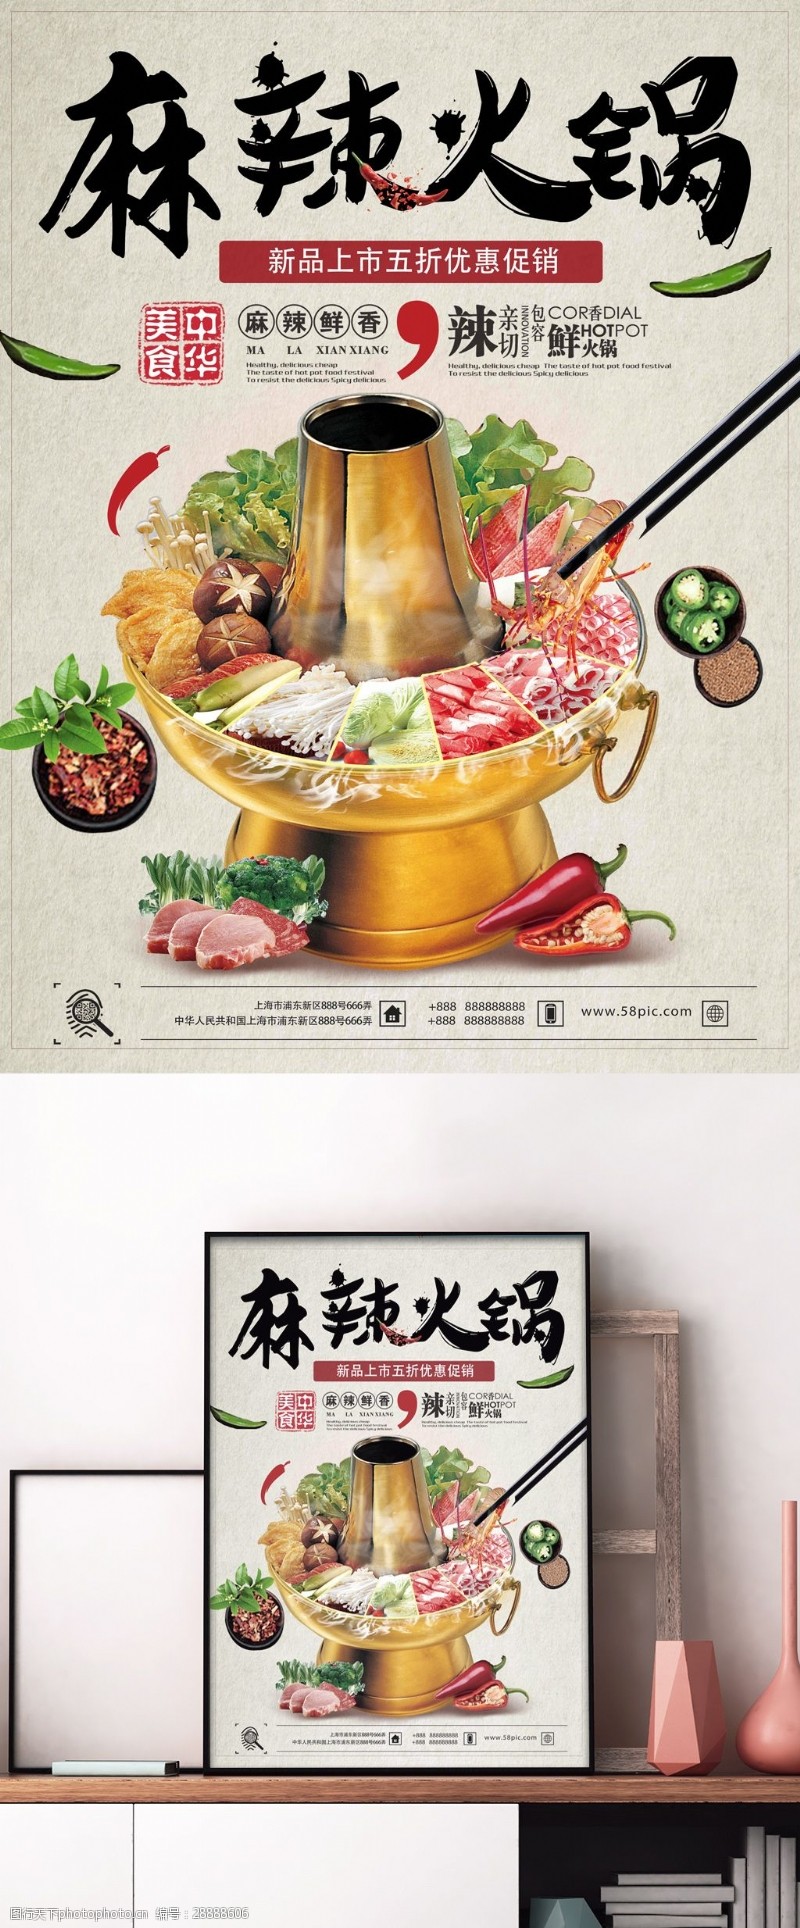 冬季新品上冬季美食推荐麻辣火锅羊肉火锅新品上市促销海报